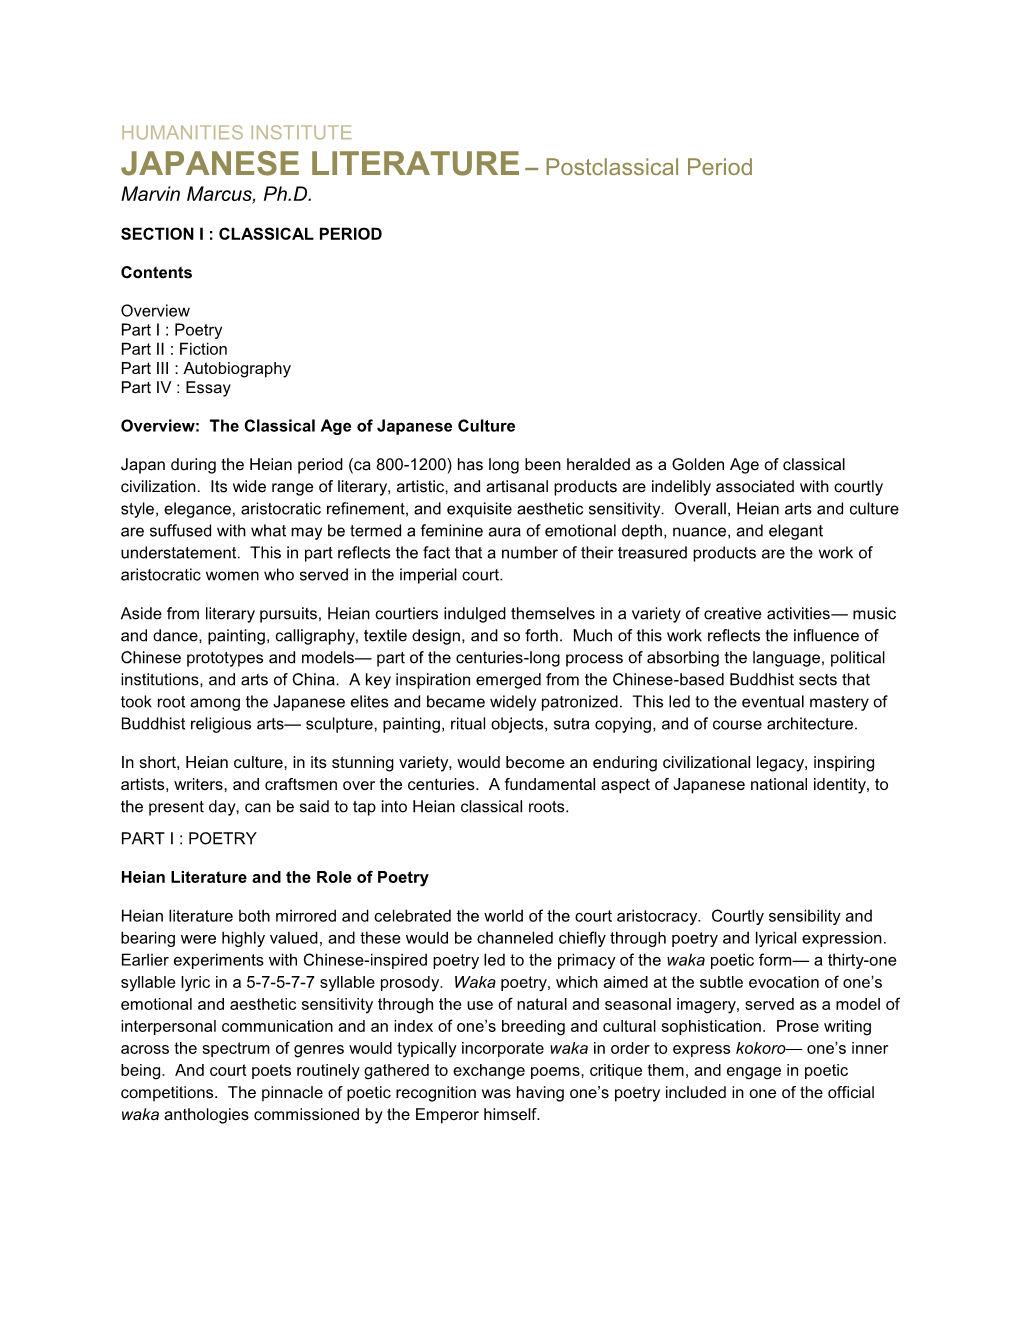 JAPANESE LITERATURE – Postclassical Period Marvin Marcus, Ph.D